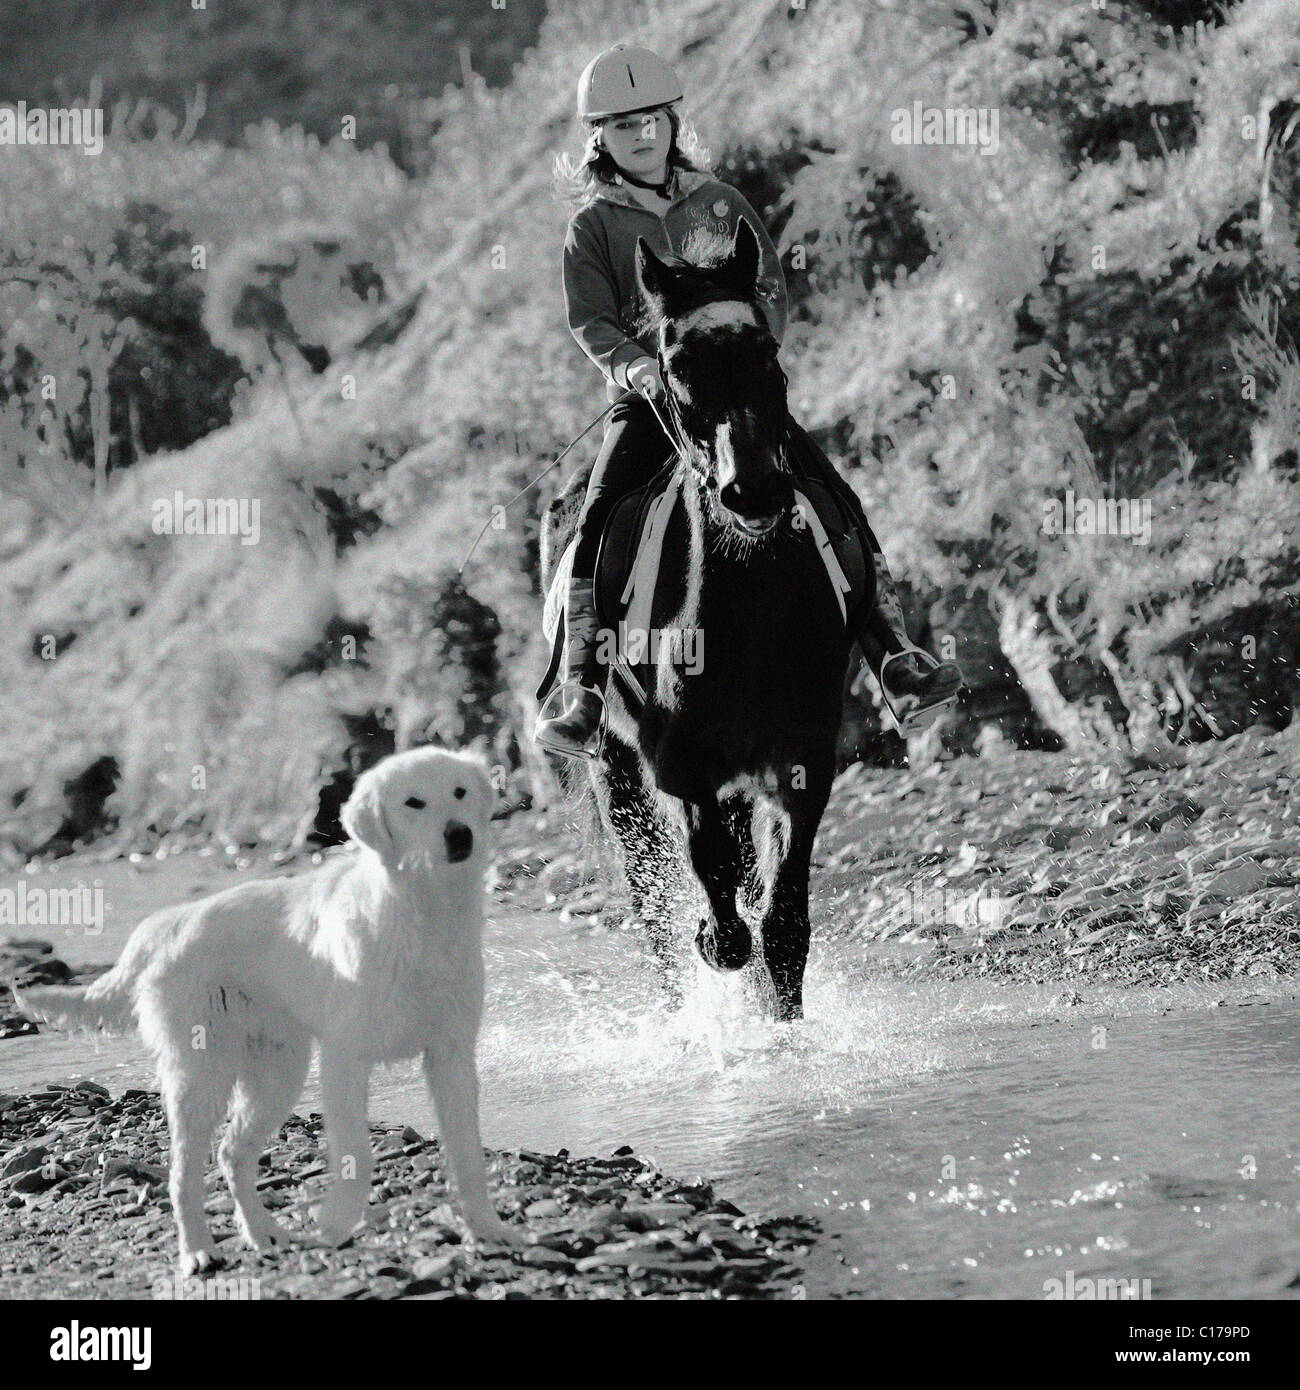 Los jóvenes chica inglesa montando su caballo en un arroyo, río, adolescente de 13, 14, 15, años, años, vieja persona, mujer, pony, Foto de stock